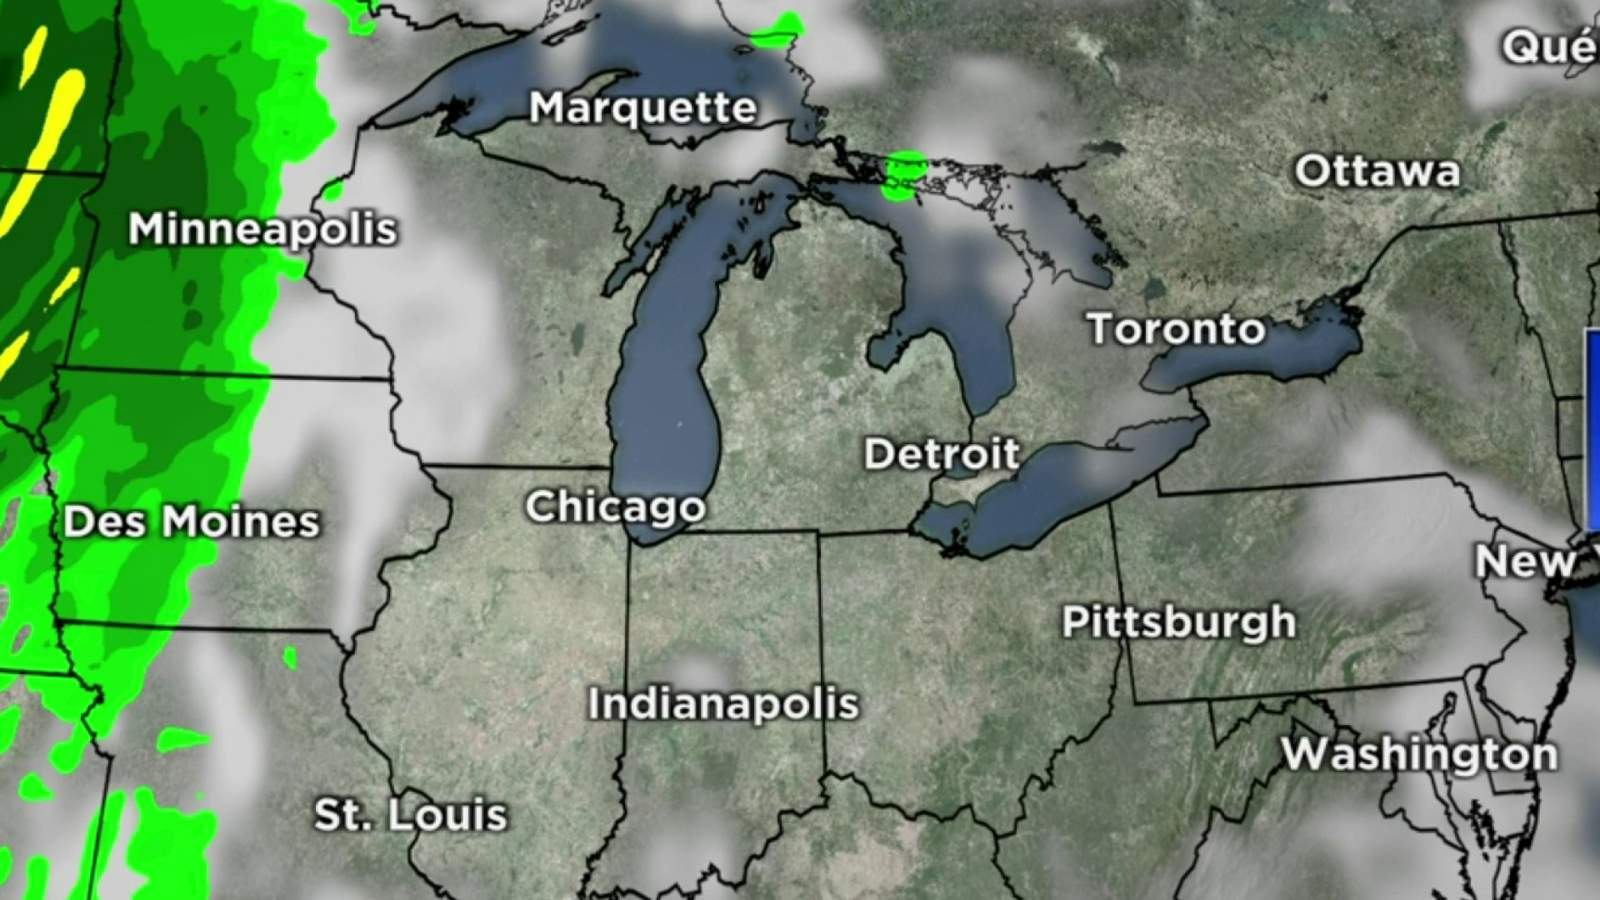 Metro Detroit weather: Dry with plenty of sun, mild temperatures